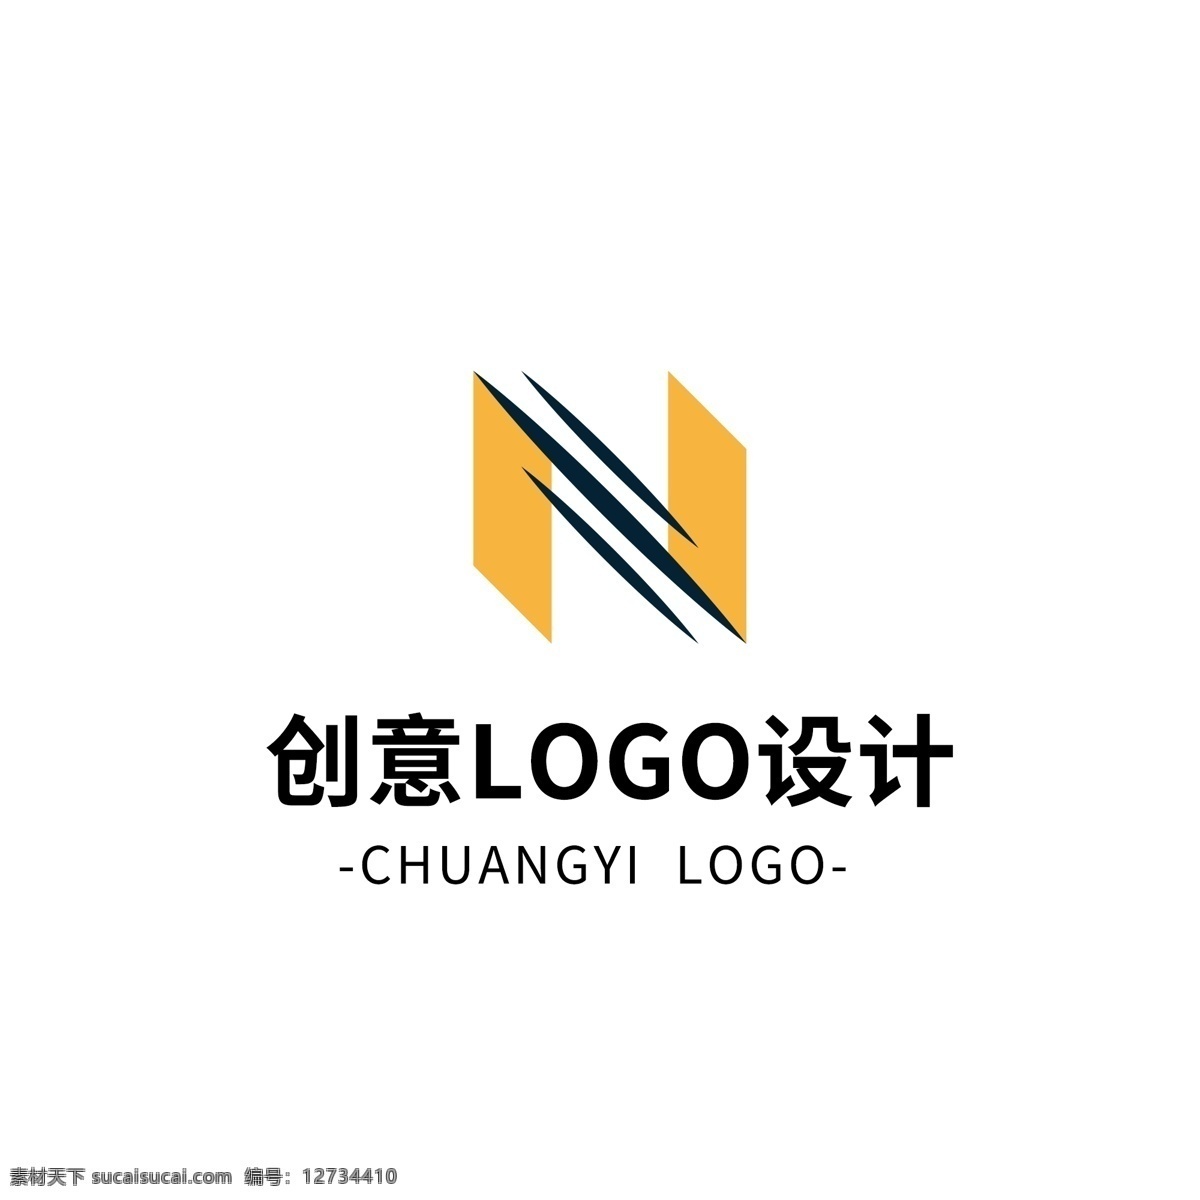 简约 大气 创意 通用 logo 标志设计 图形 几何 黄色 矢量